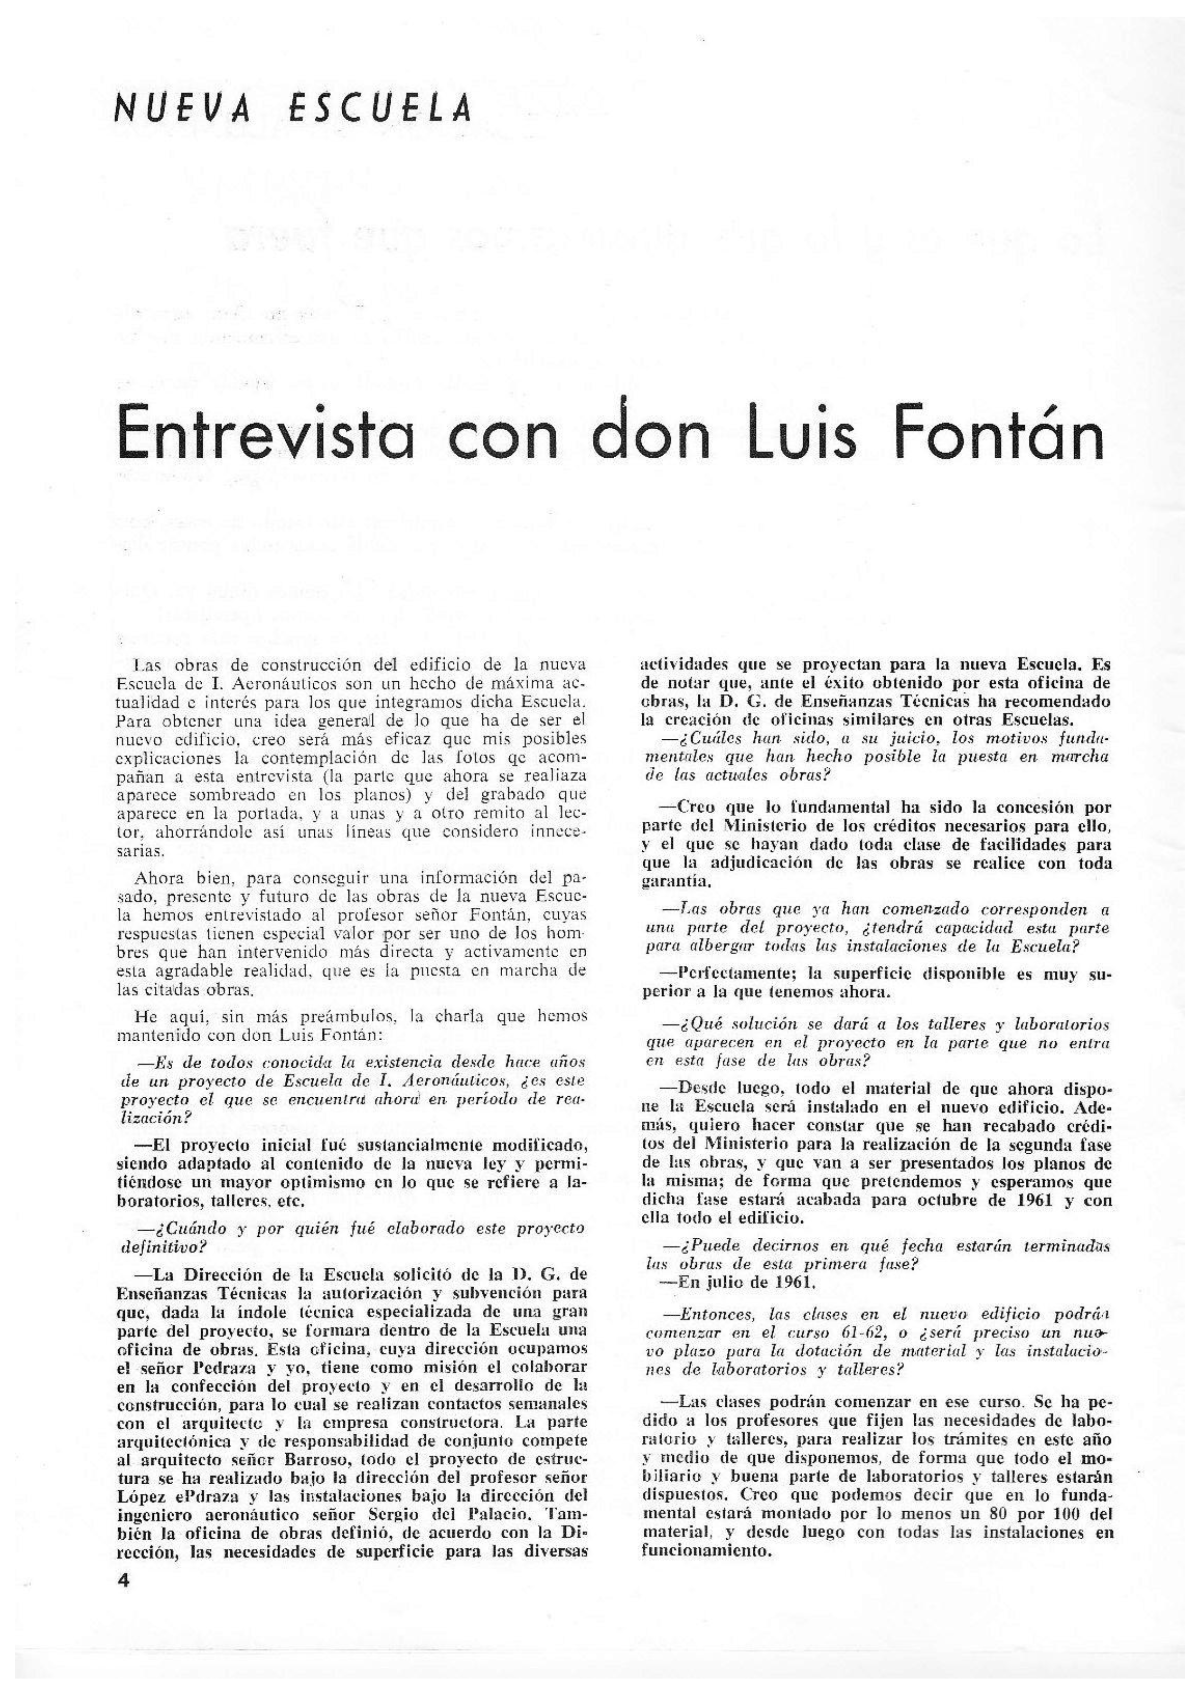 Entrevista a Don Luis Fontan